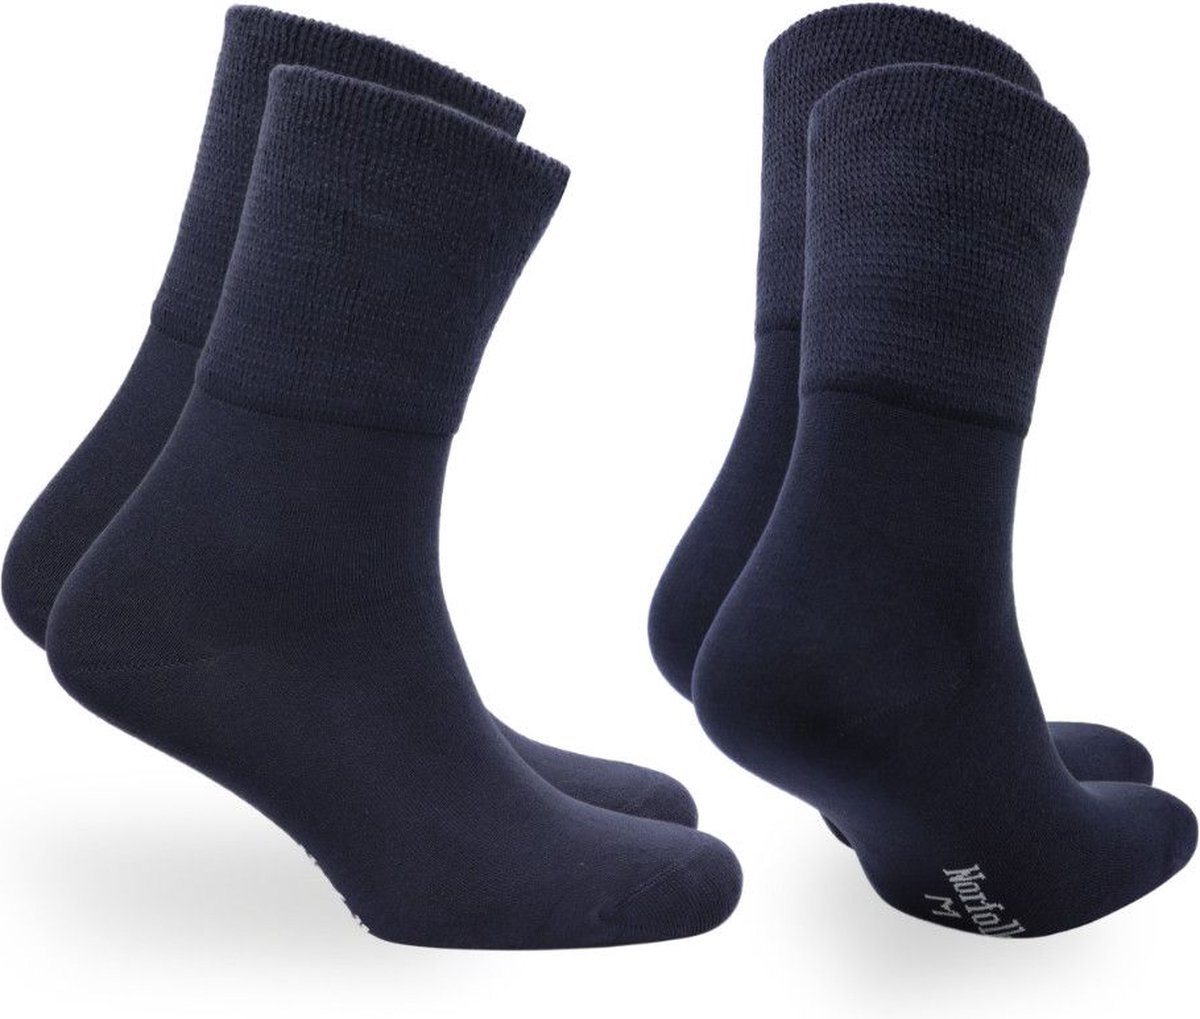 Norfolk - 2 paar - 91% Bamboe Sokken - Stretch+ Extra Brede Sokken - Sokken Heren - Blauw - Maat 43-46 - Cambridge